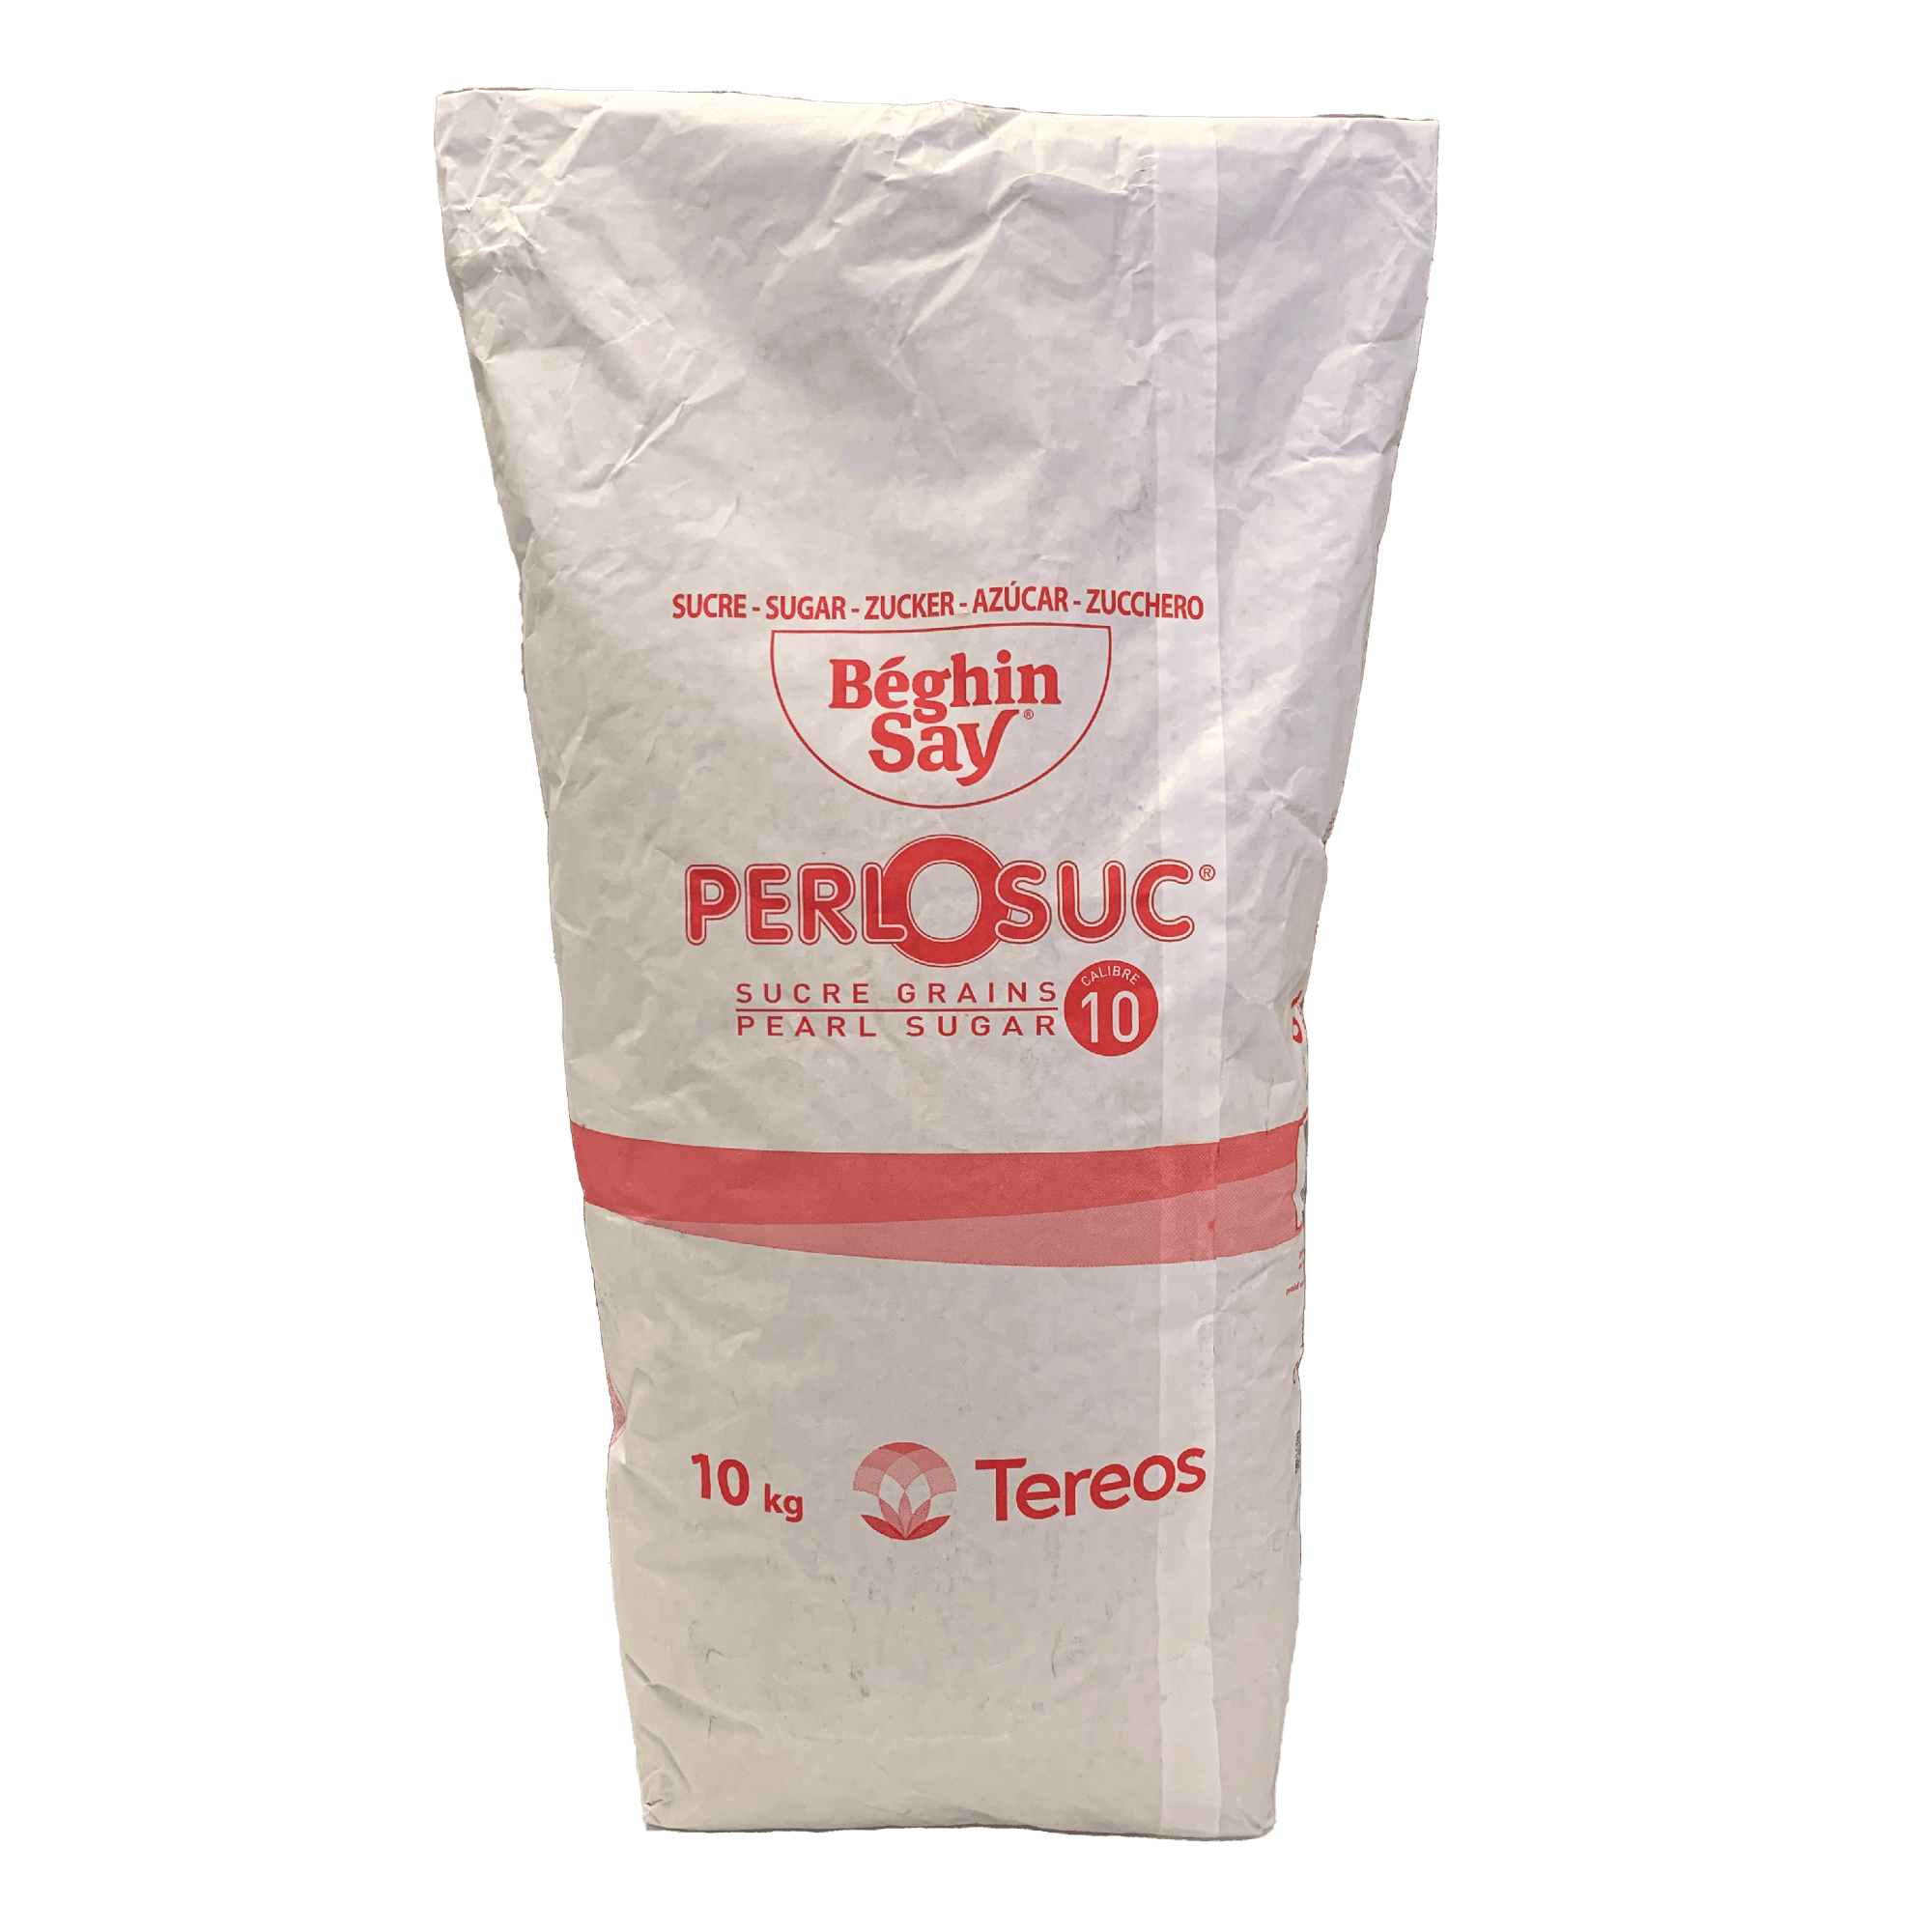 Pearl Sugar Calibre 10 — Savory Gourmet